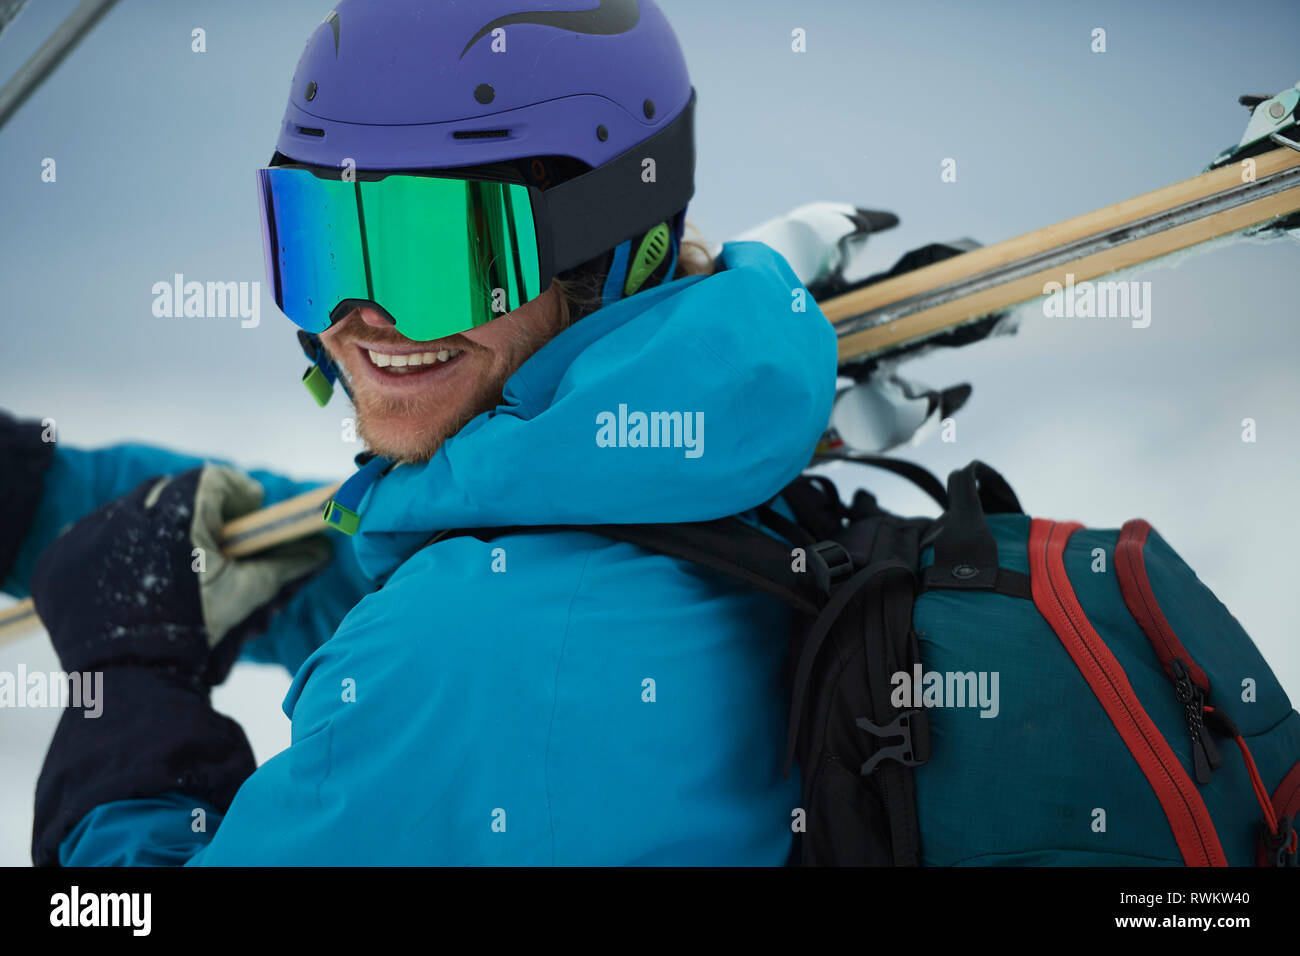 Esquiador macho llevar esquís mirando por encima del hombro, retrato, Alpe-d'Huez, Rhône-Alpes, Francia Foto de stock